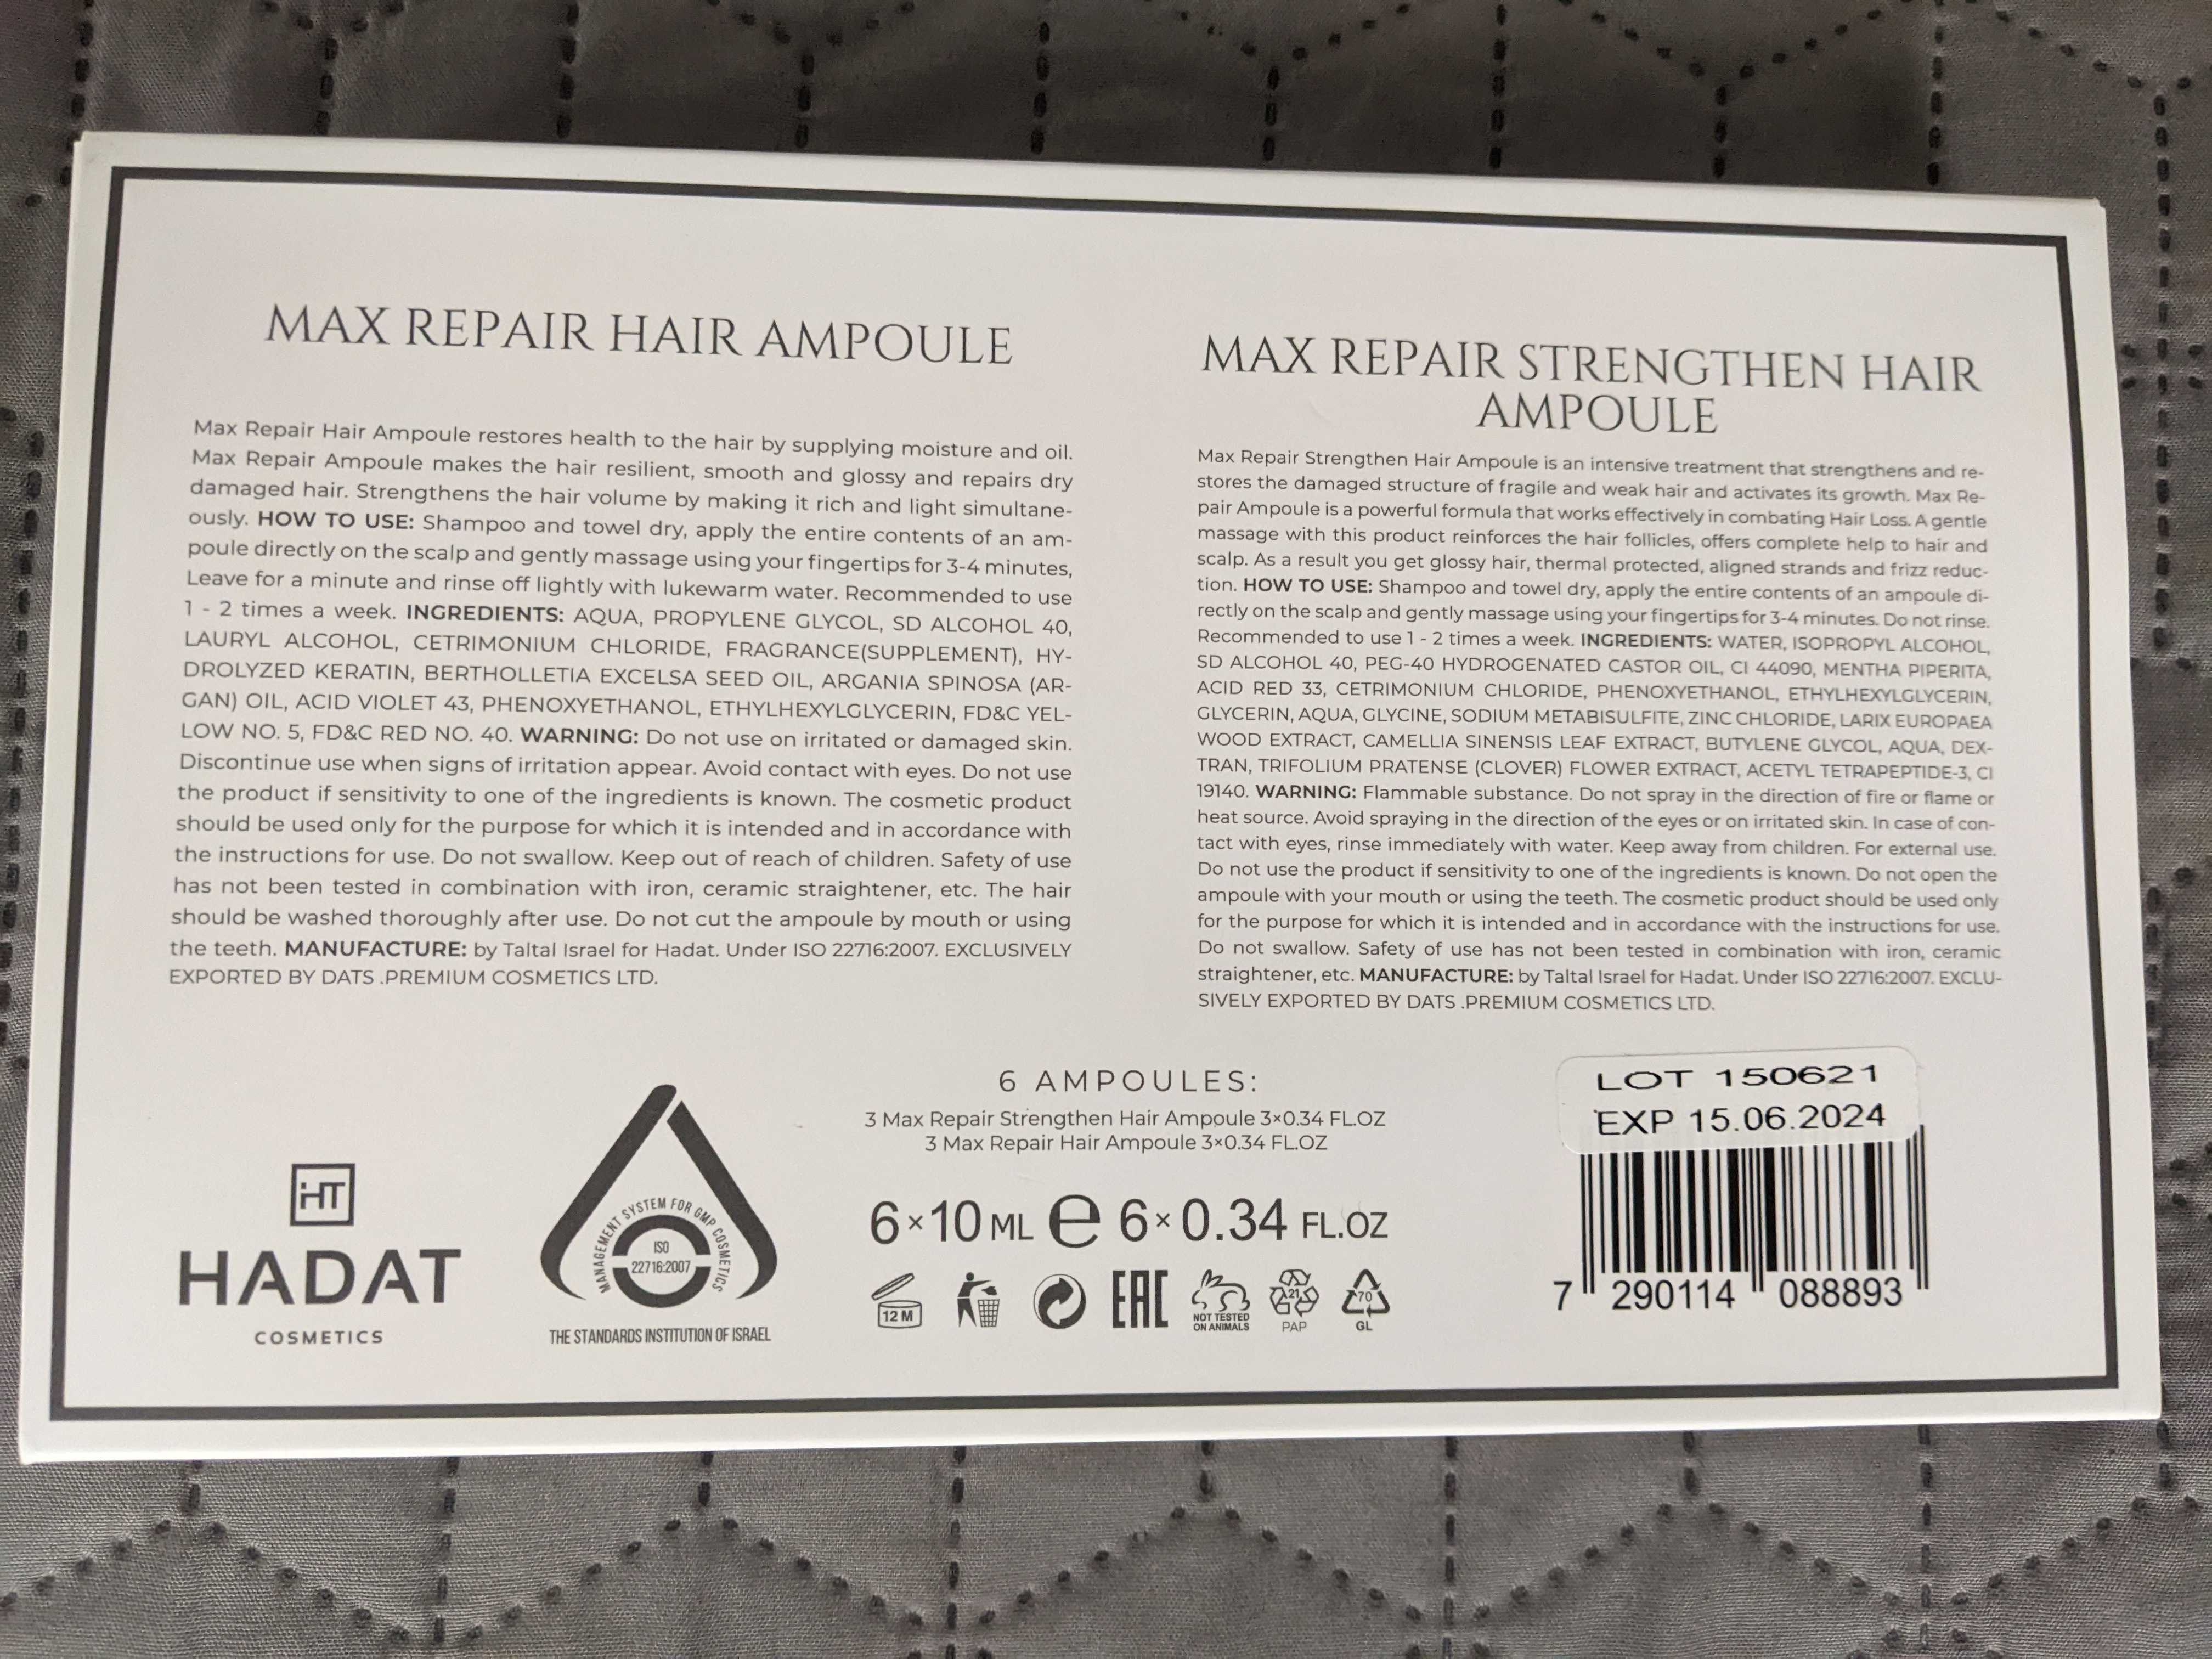 Hadat Cosmetics Max Repair Strengthen Hair Ampoule